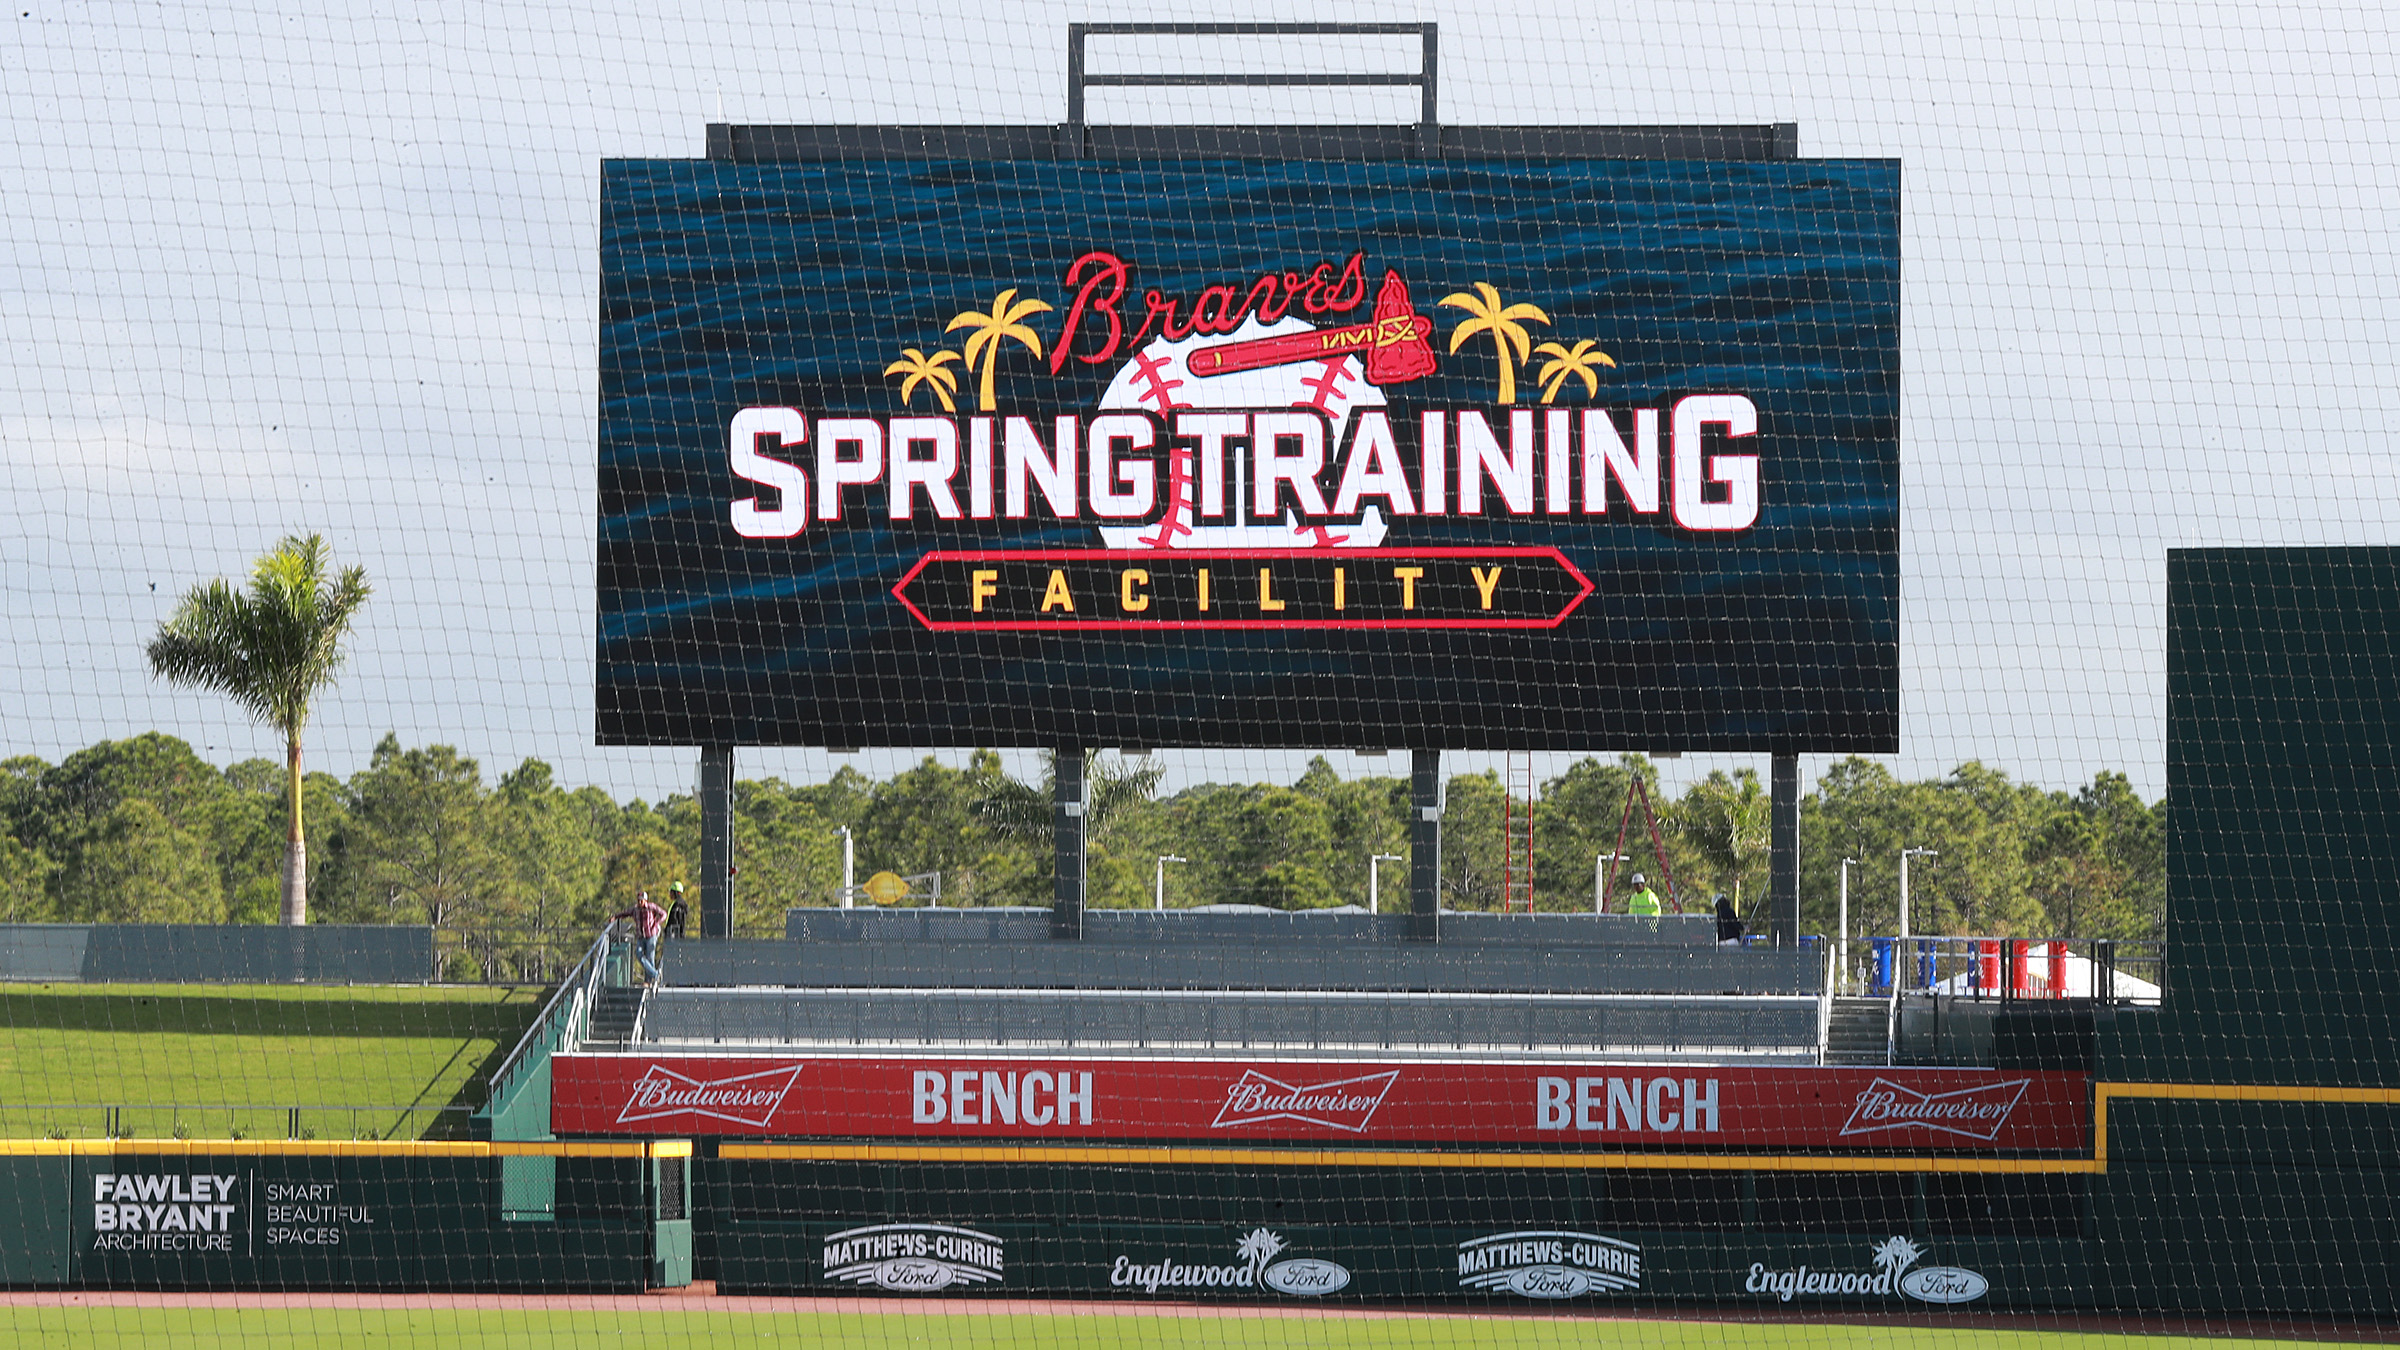 AstroTurf completes installation at Atlanta Braves' spring training ballpark  - Athletic Turf